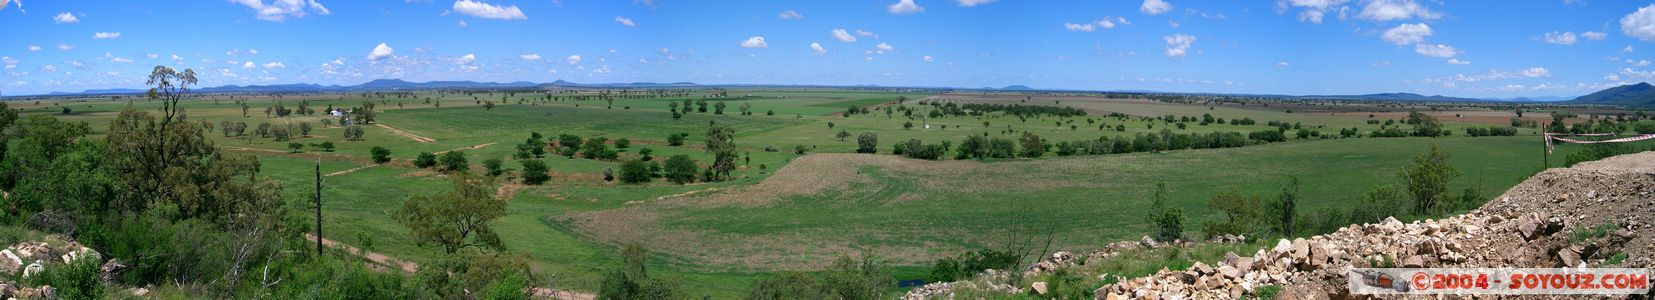 Gunnedah - countryside - panorama
Mots-clés: panorama